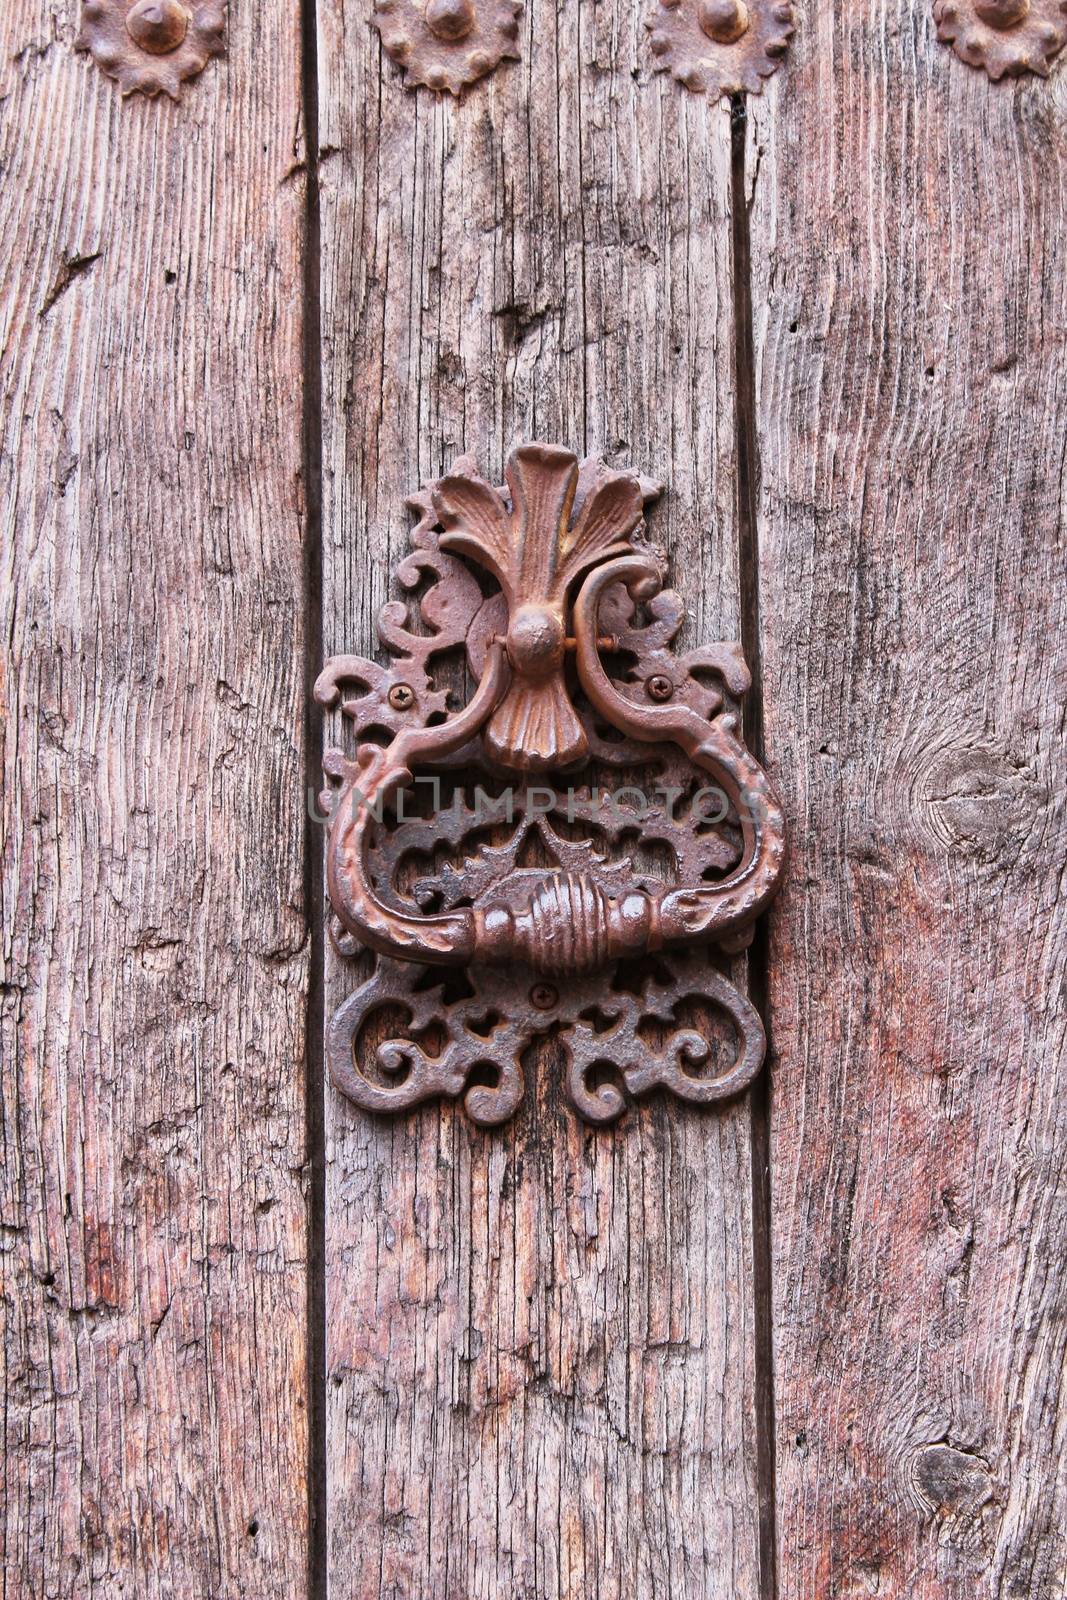 Vintage door knocker on old wooden door by soniabonet